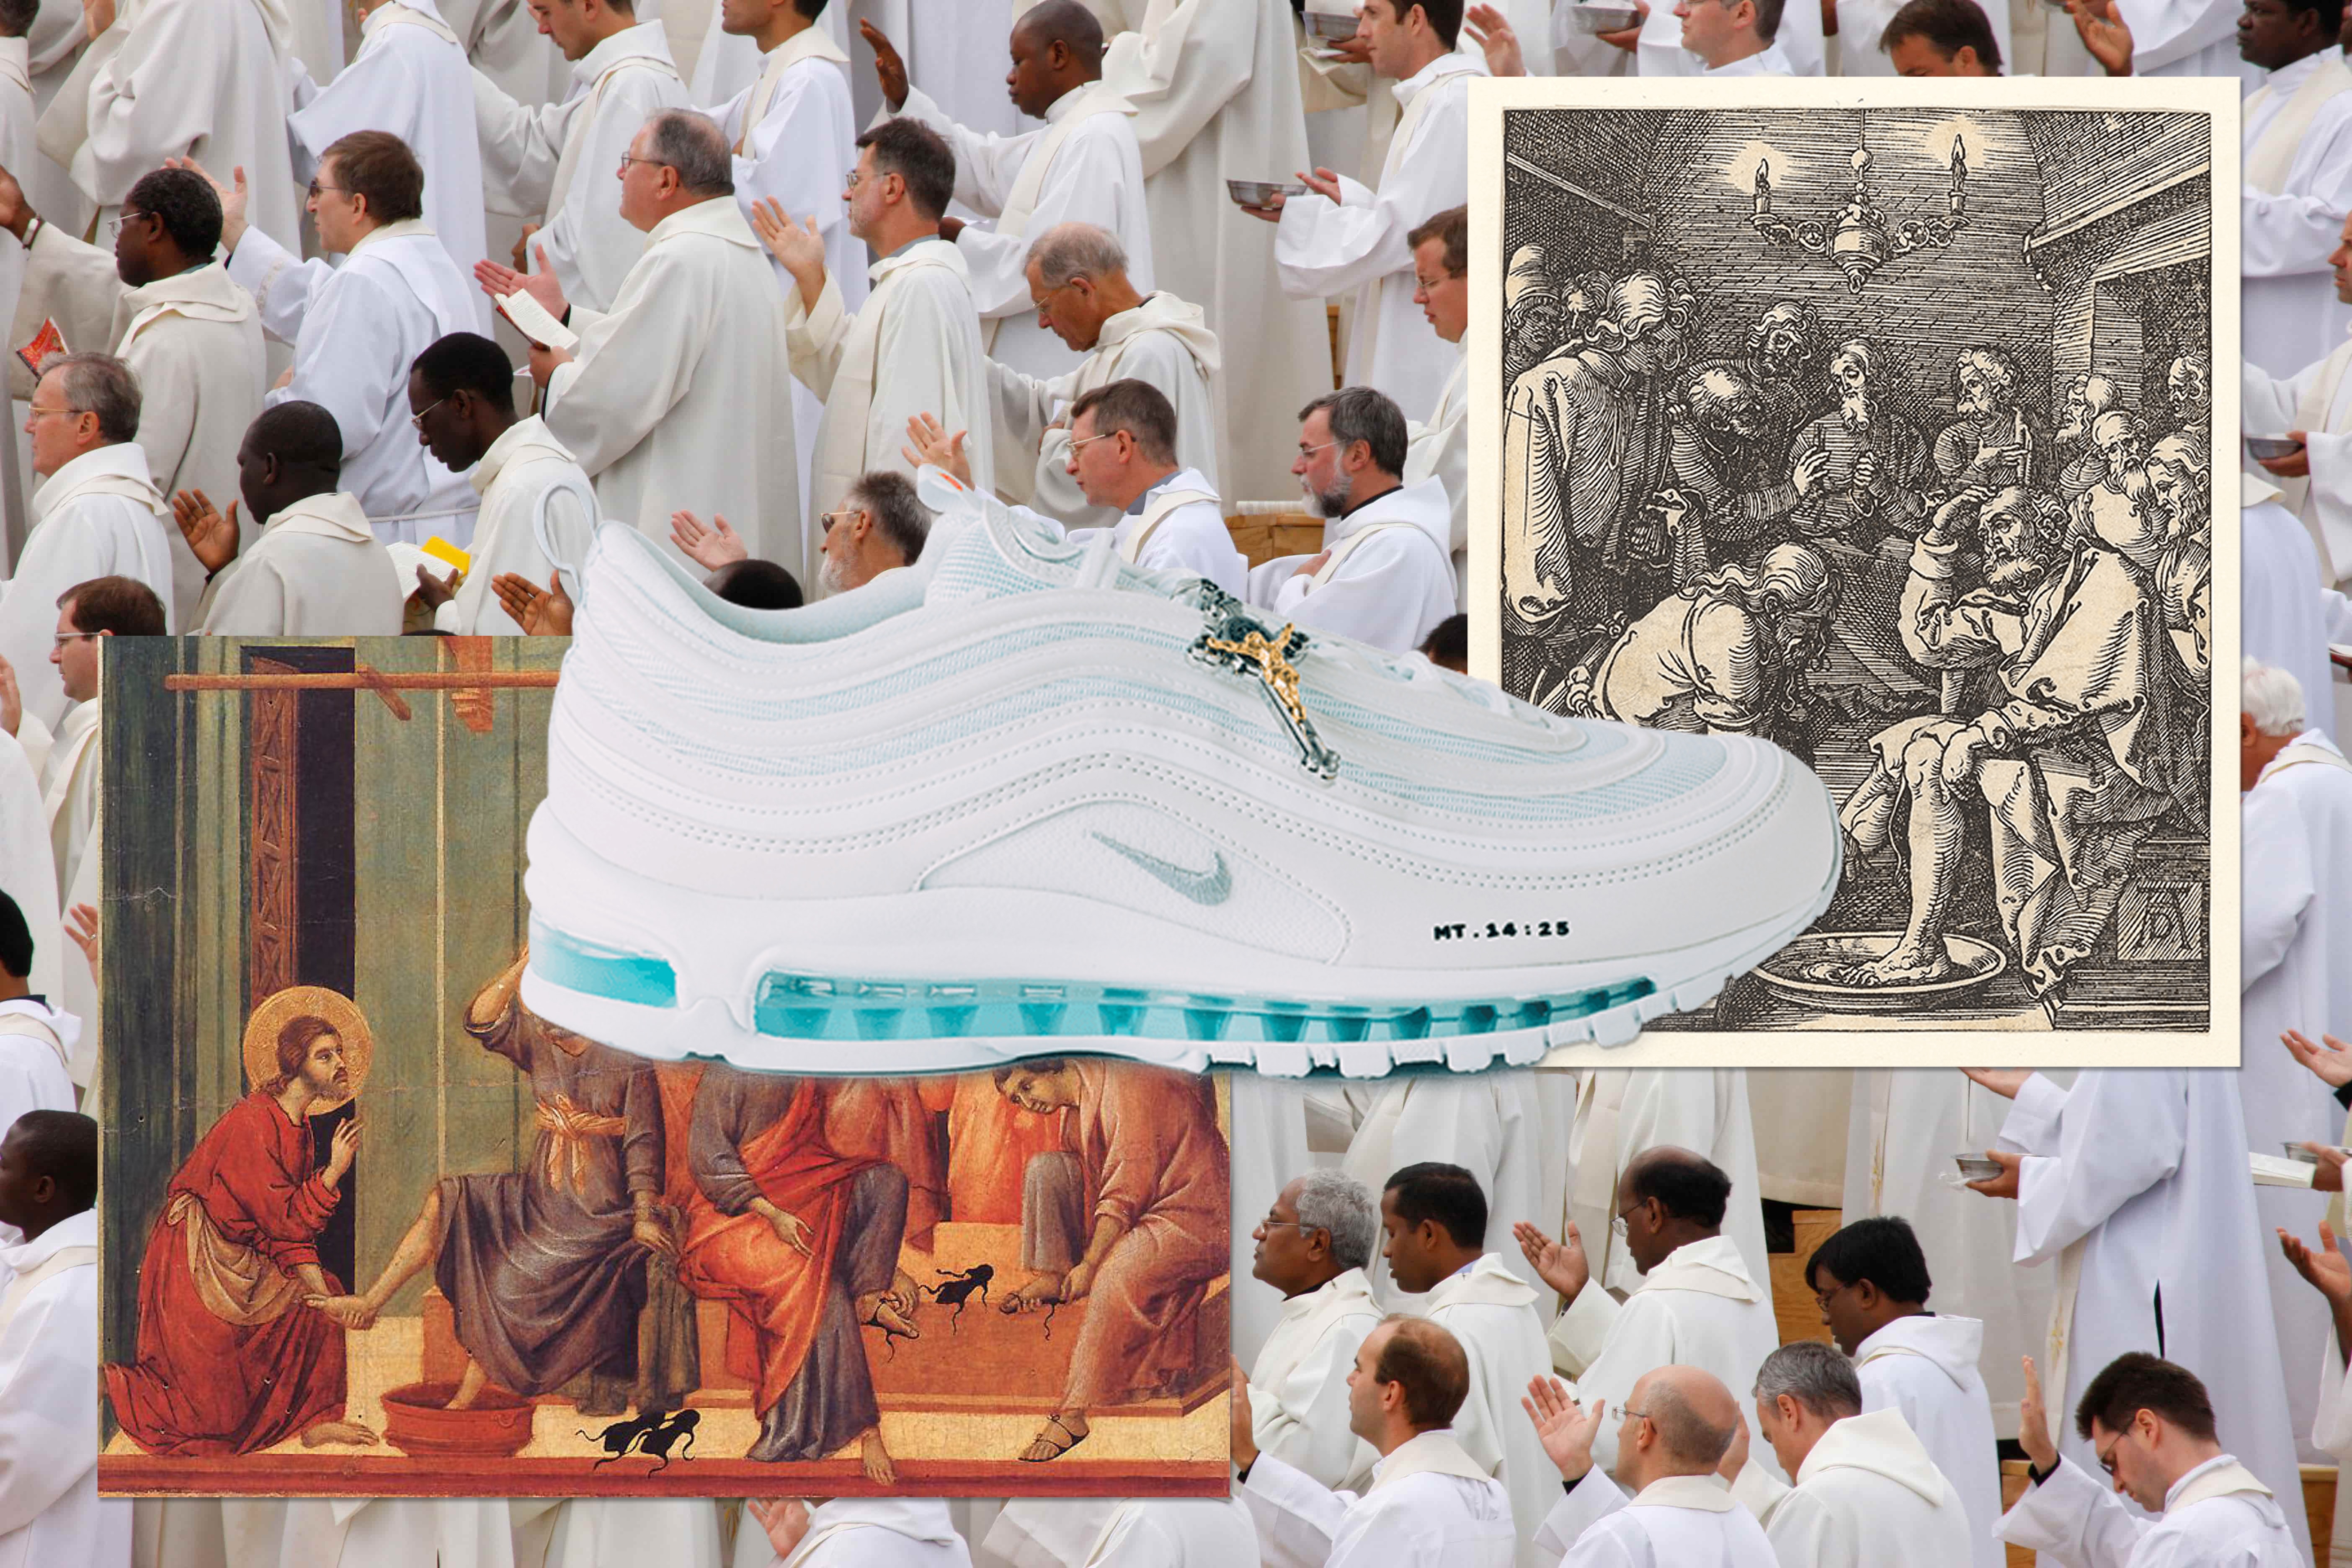 揭秘 Google 最熱搜球鞋「Jesus Shoe」背後團體及創作故事 | 專訪 MSCHF 創始人 Gabriel Whaley